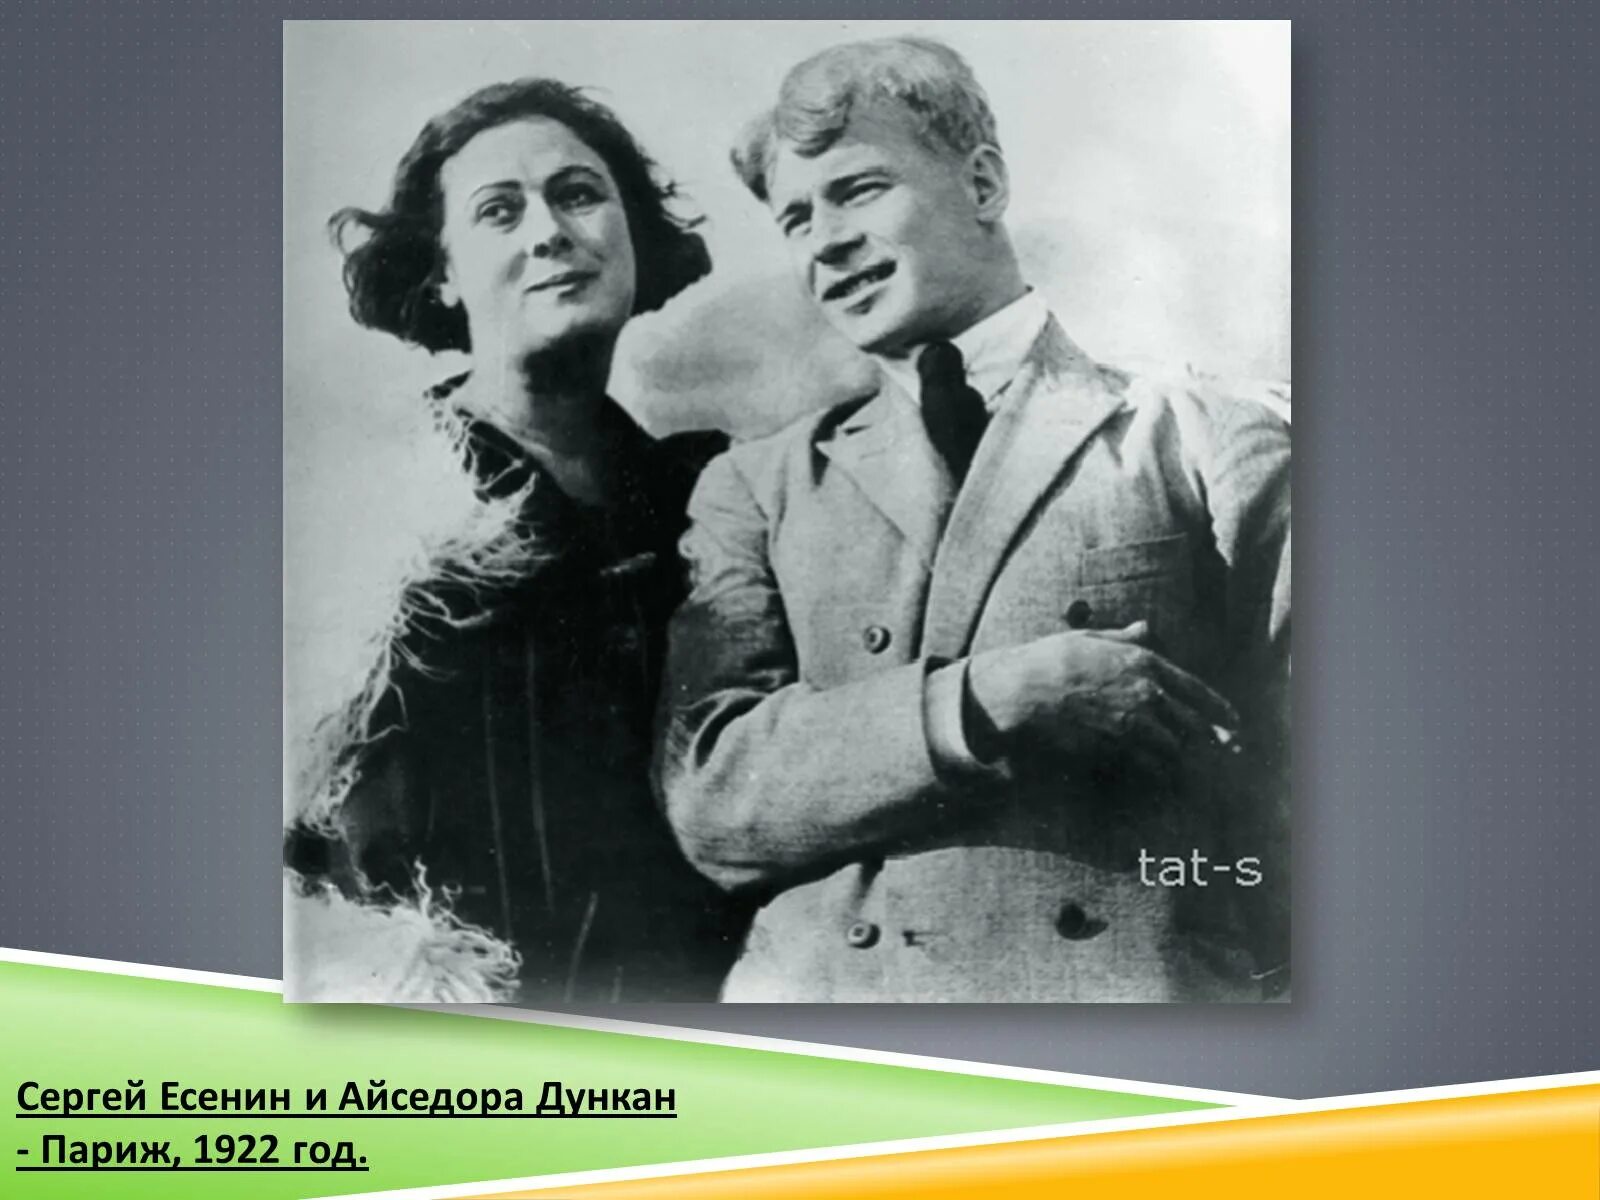 Айседора Дункан и Есенин. Есенин и Айседора Дункан, 1922. Есенина и Айседоры Дункан.